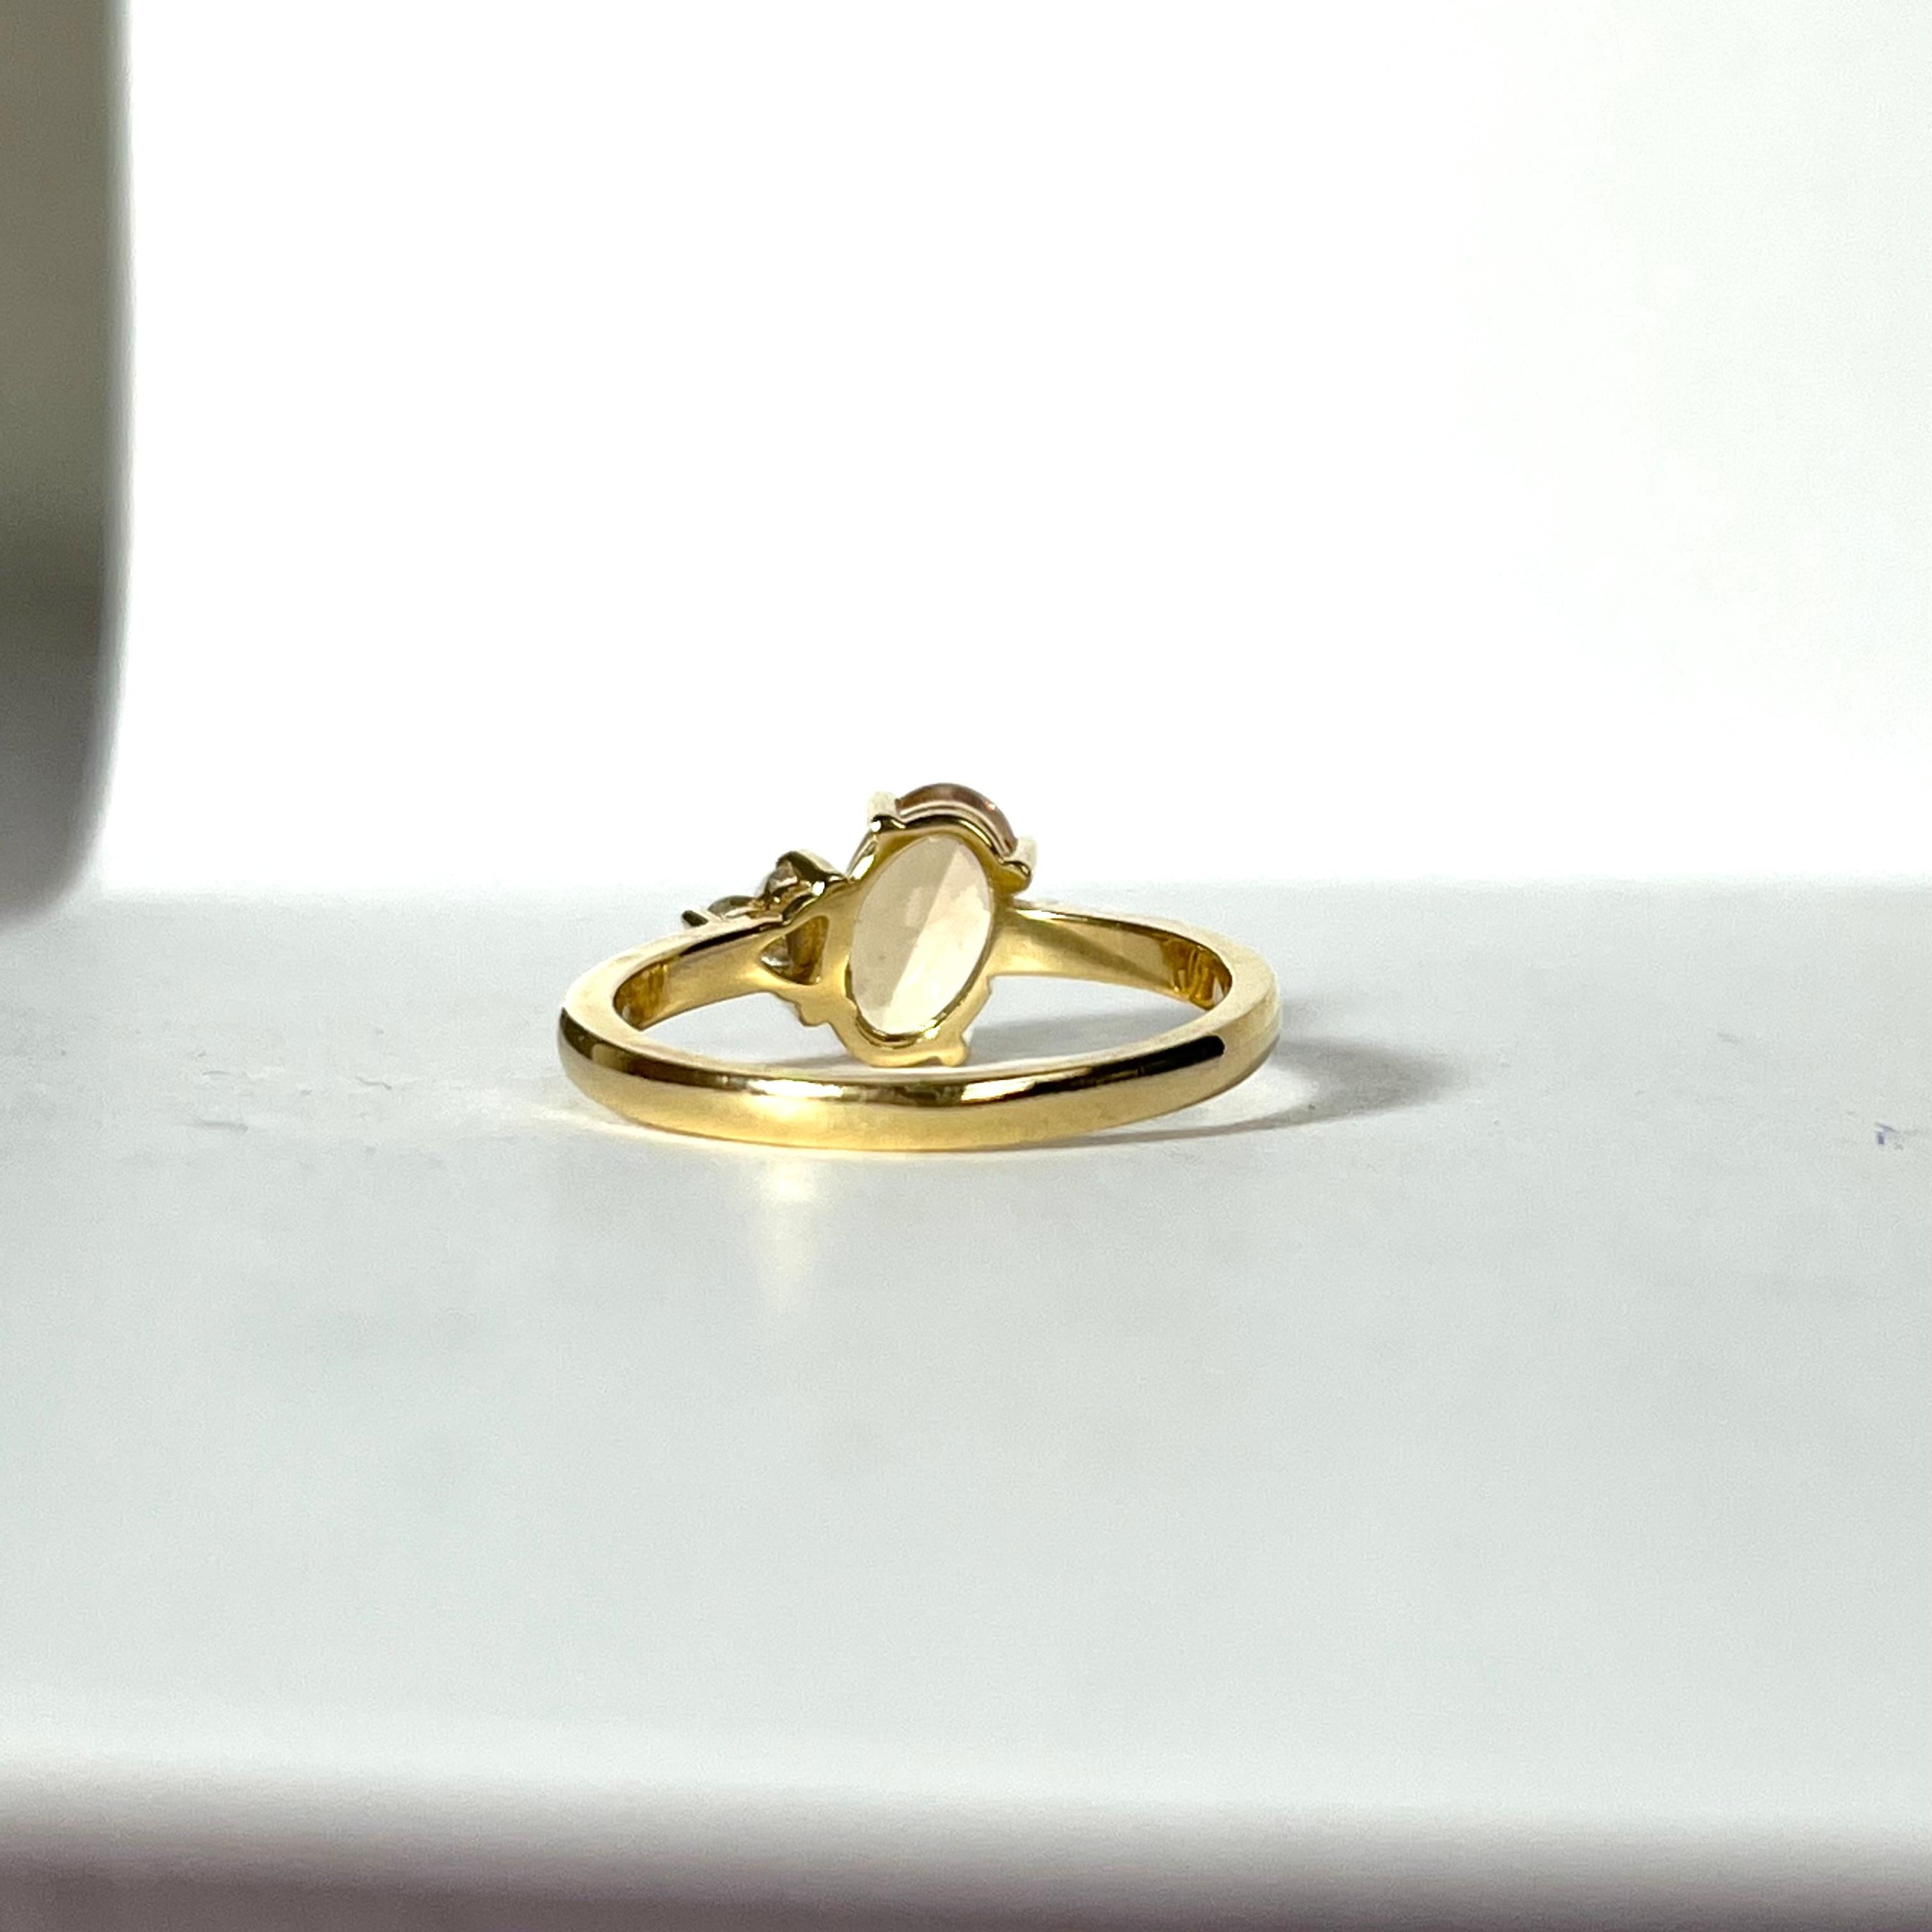 Une magnifique topaze impériale et des diamants sertis dans un bracelet en or jaune 18 carats.

La topaze est de taille ovale et le diamant est en forme de cœur, qu'il soit naturel ou extrait du sol.

La topaze mesure 8x5mm et le diamant 4mm, .25ct